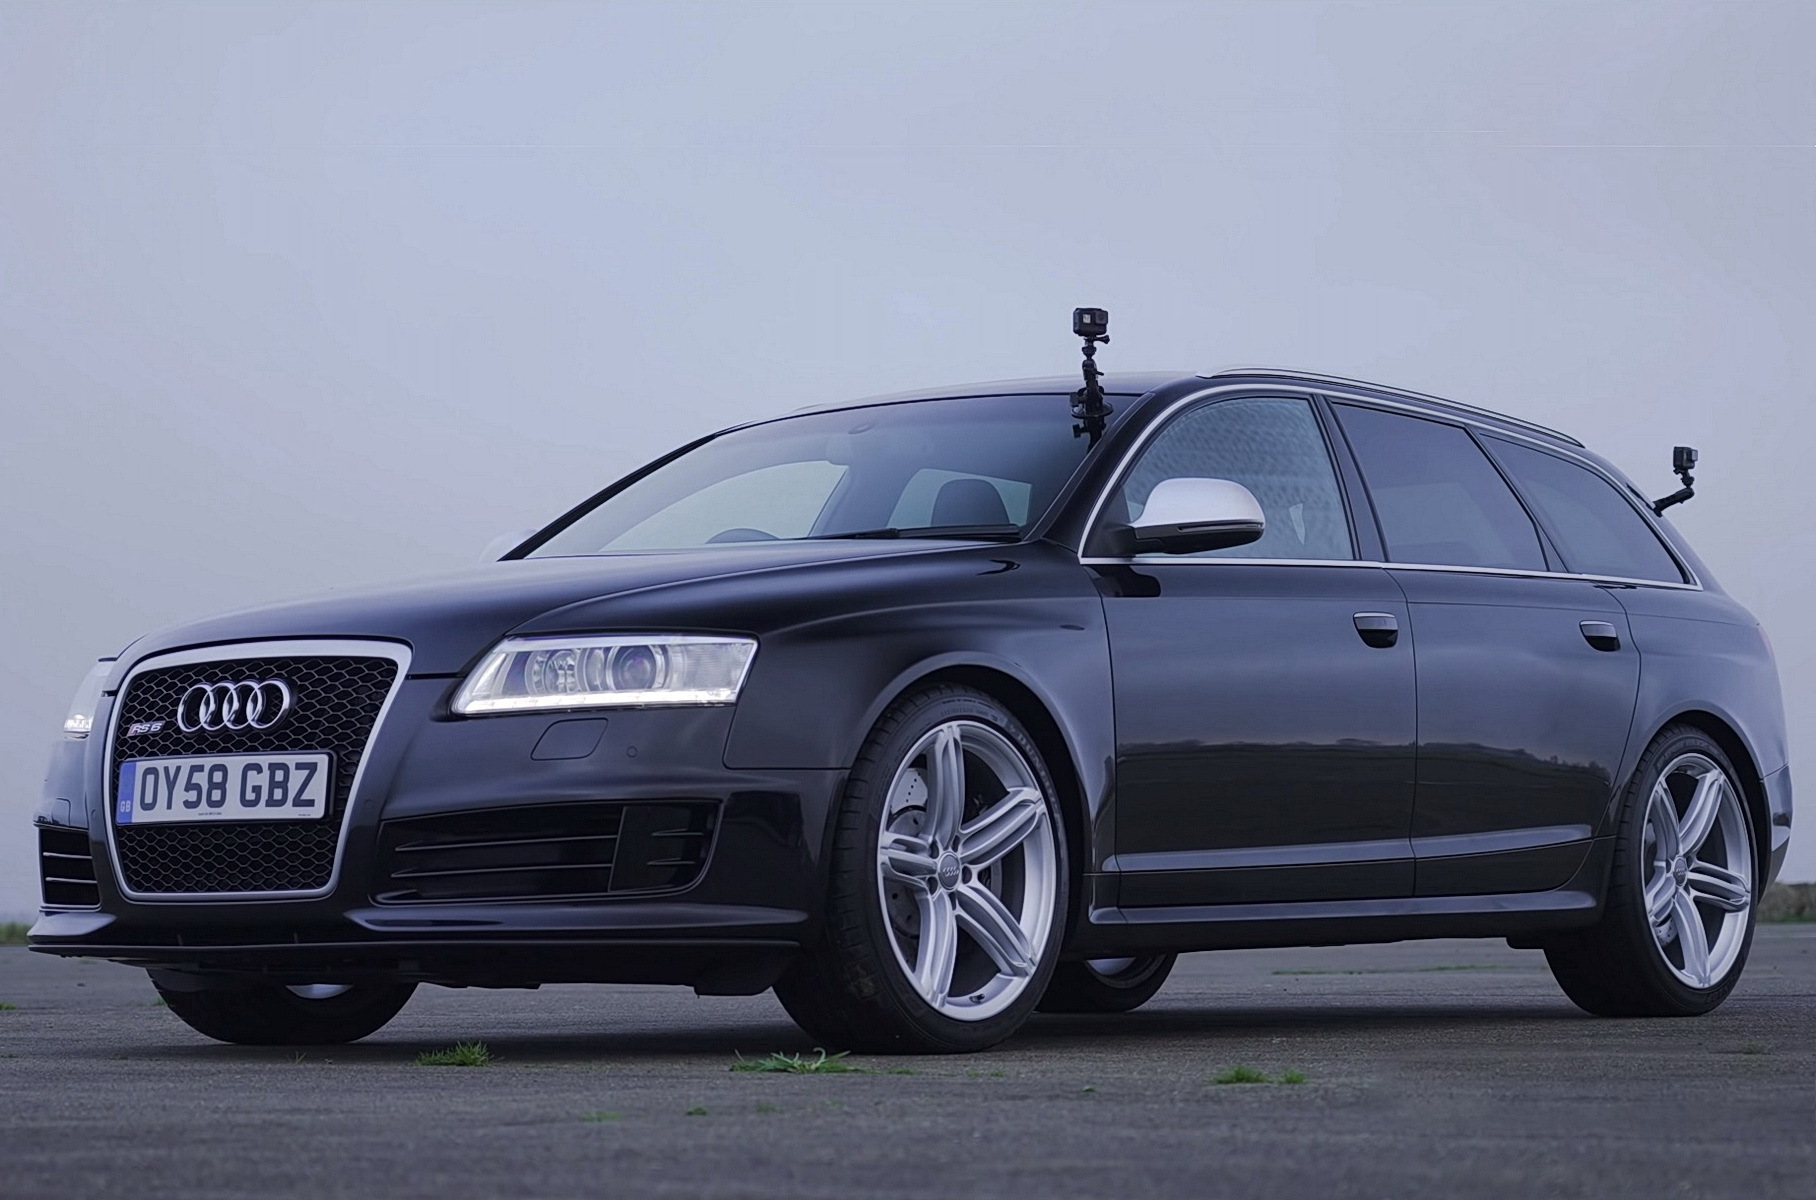 Видео: четыре поколения Audi RS 6 сразились в дрэге